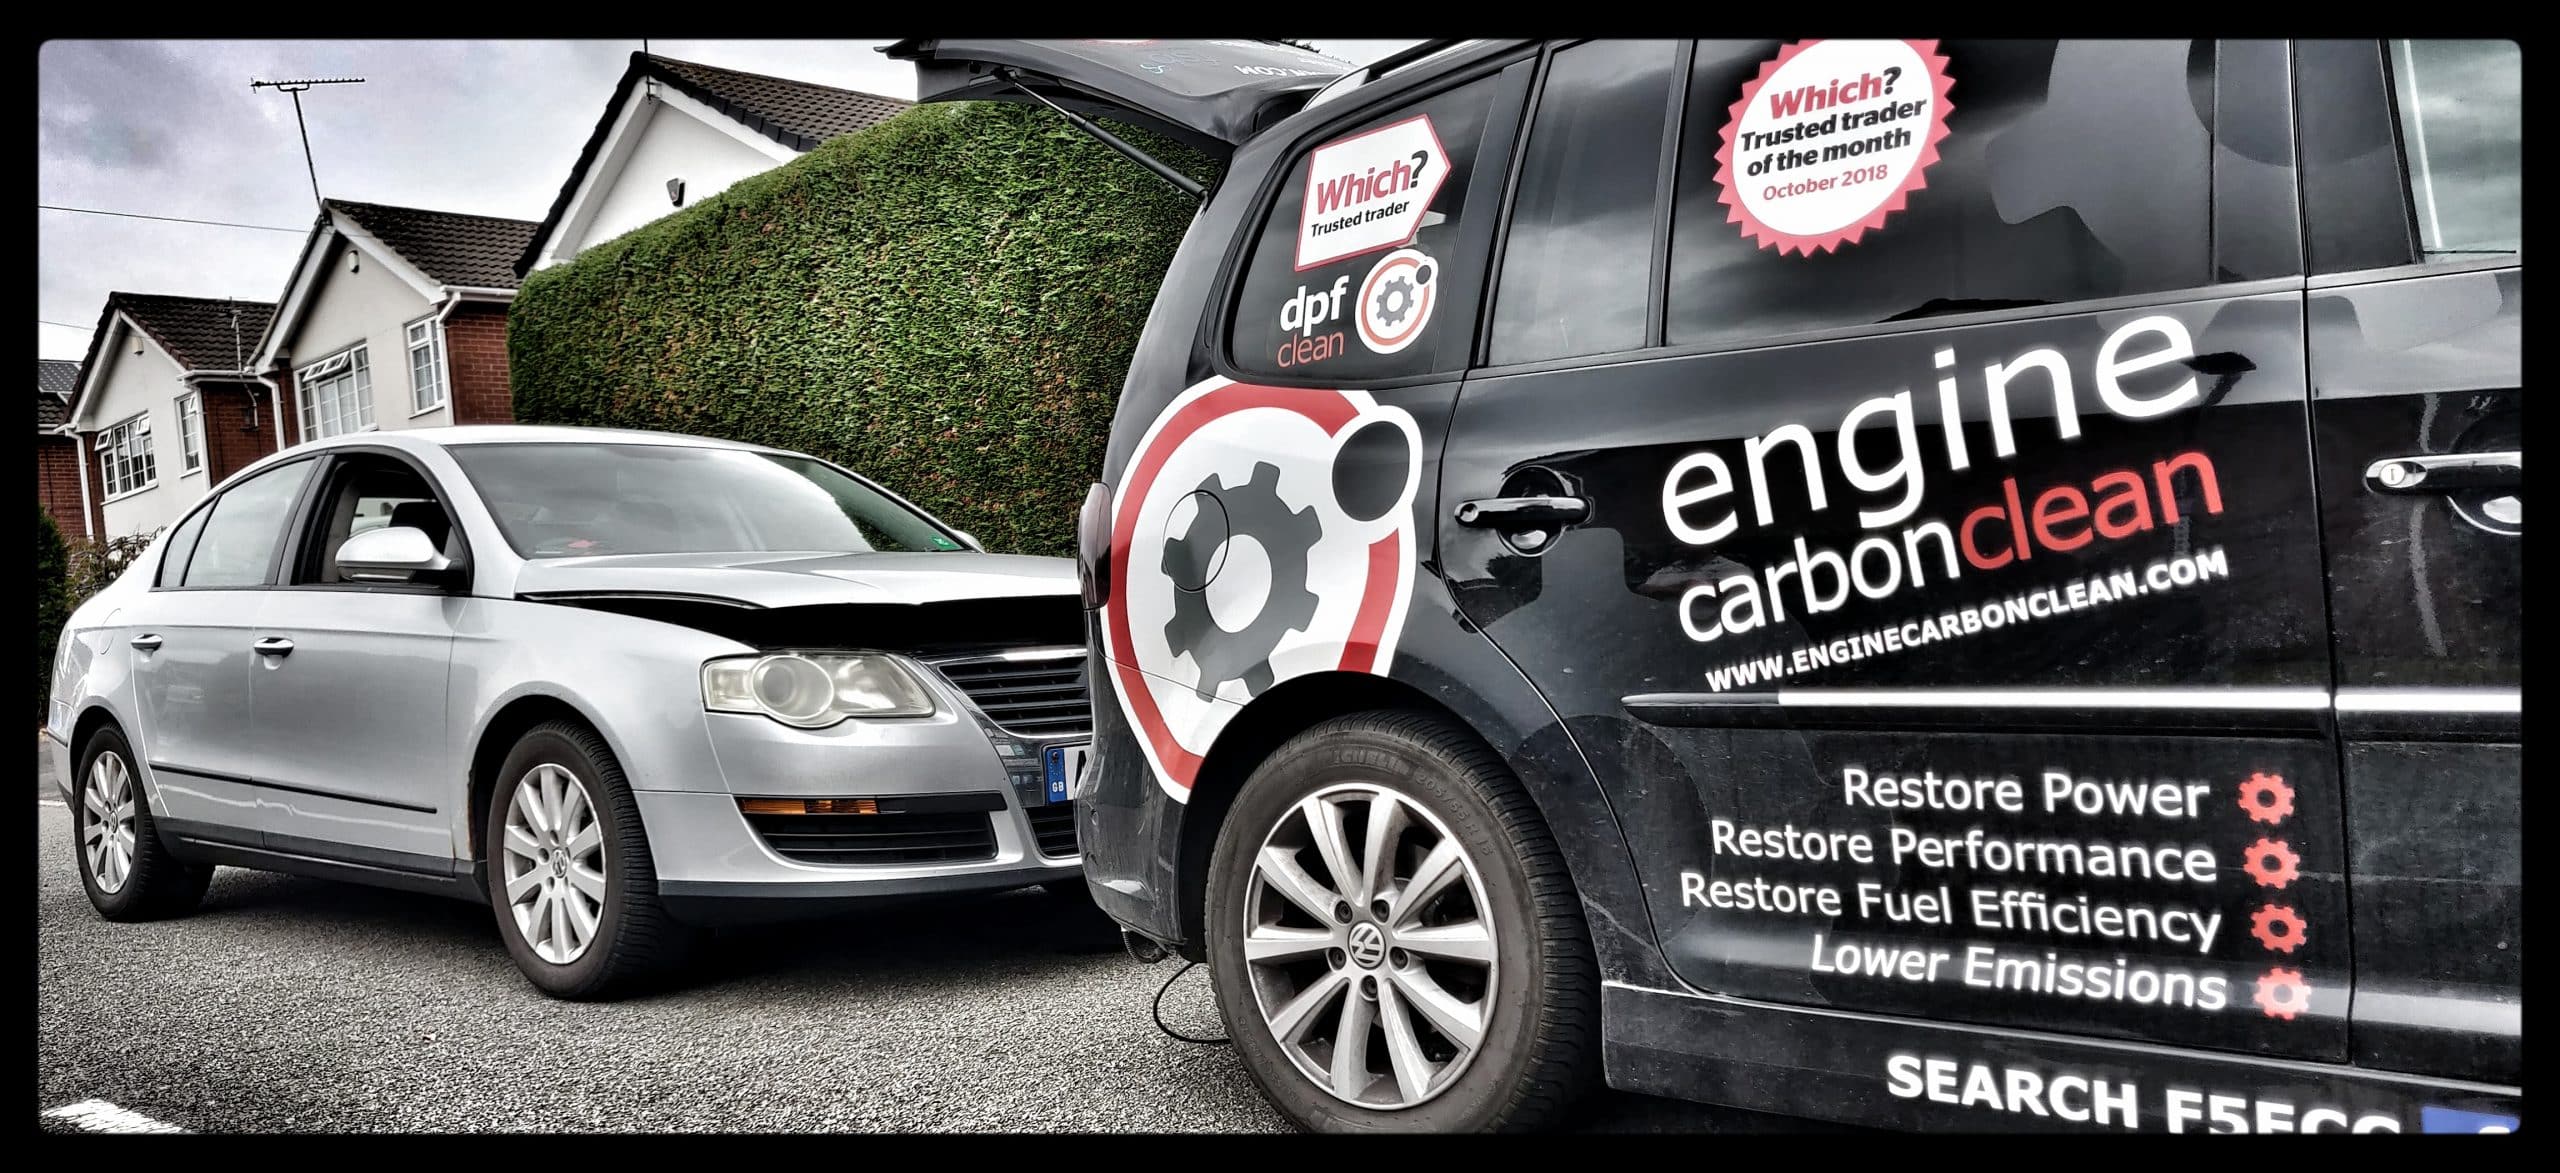 MOT emissions high? Diagnostic and Engine Carbon Clean - VW Passat 1.9 TDI (2007 – 144, 414 miles)